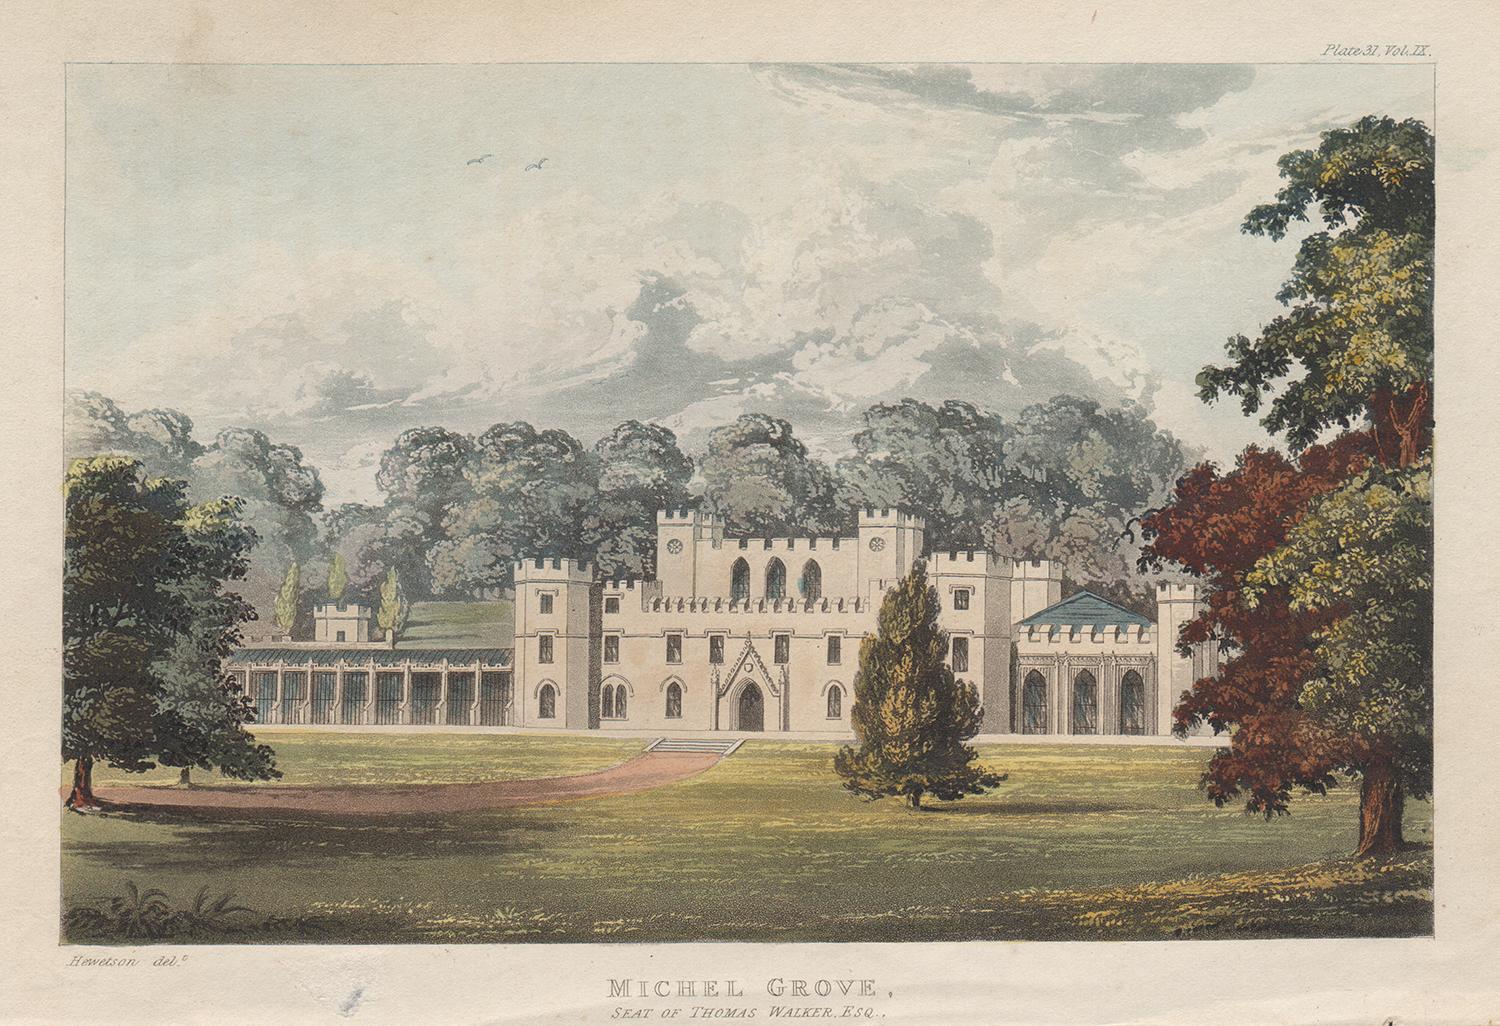 Aquatinte de maison de campagne de style Régence anglaise du Sussex, de Michel Grove, 1818